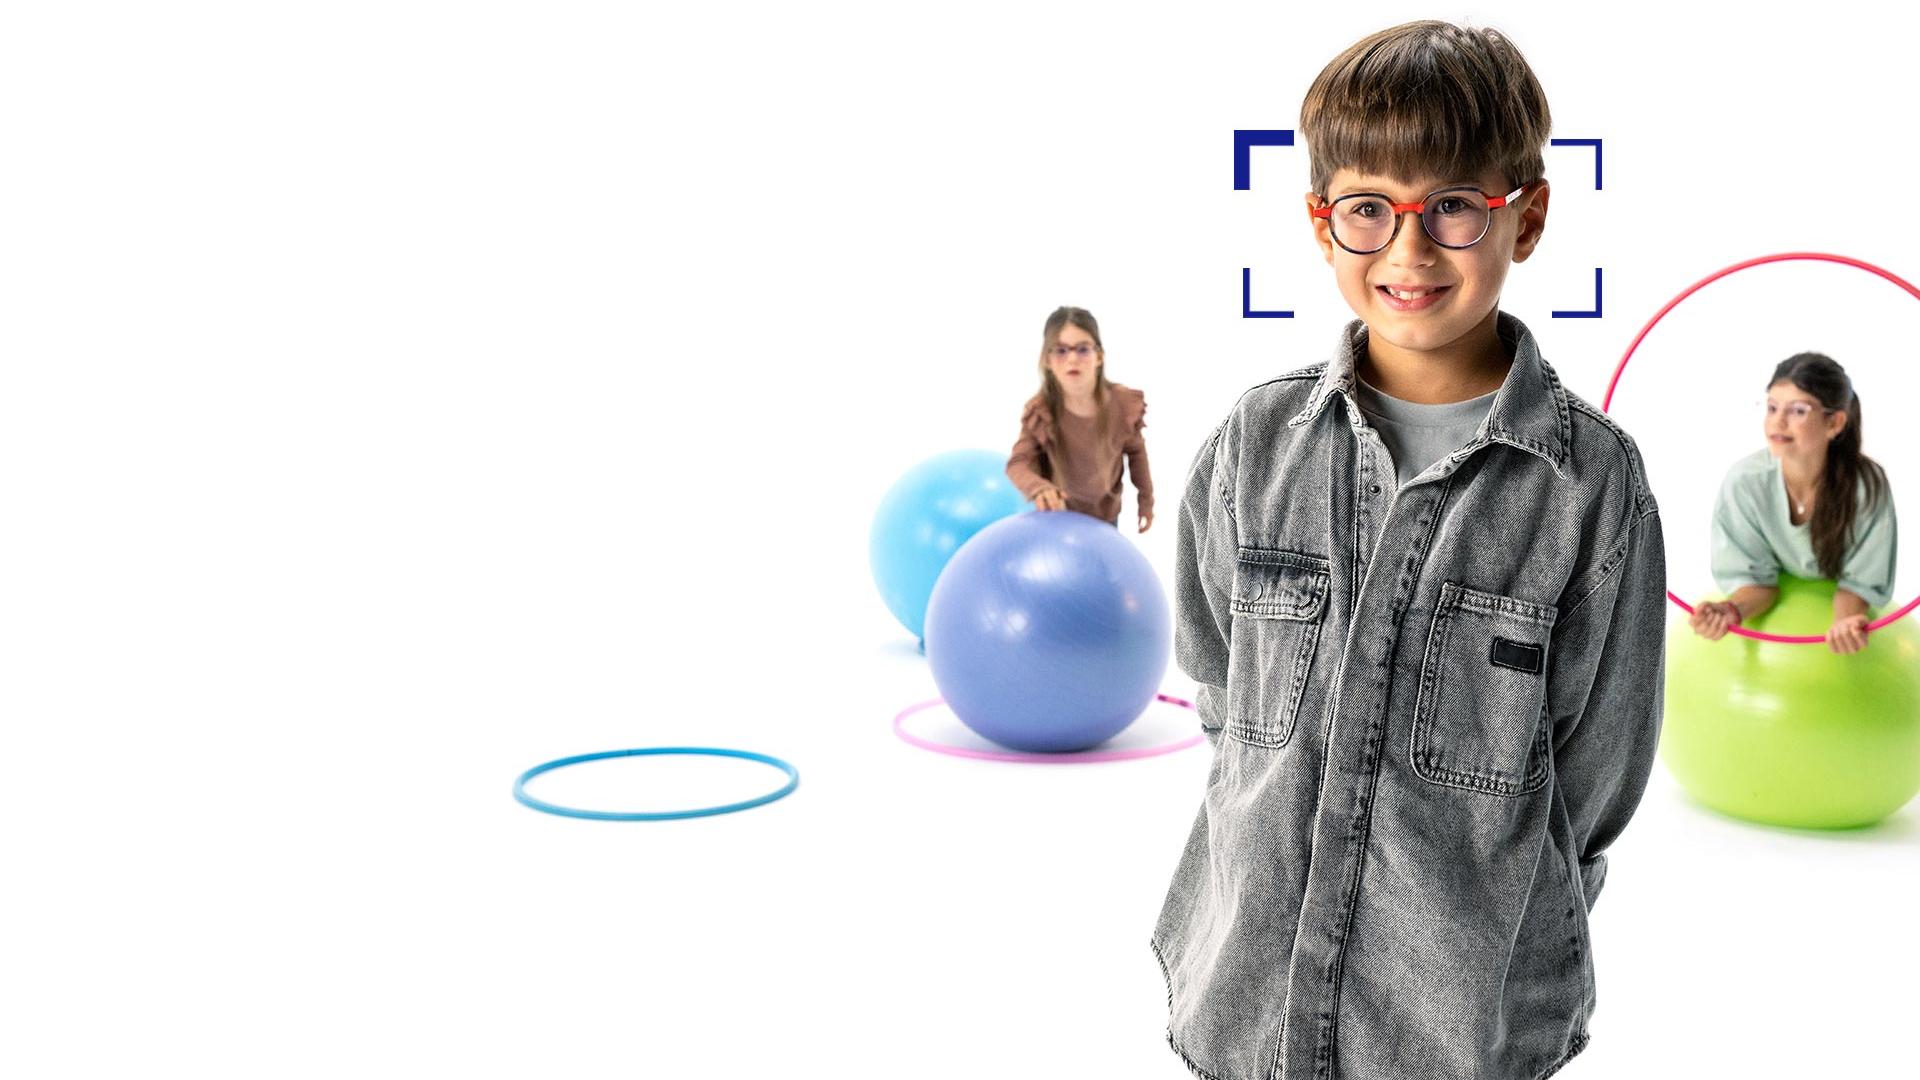 Brunhåret gutt med runde briller med ZEISS MyoCare-brilleglass står i forgrunnen og smiler til kameraet. I bakgrunnen er to jenter med ZEISS MyoCare-brilleglass som leker med bøyler og gymnastikkballer.